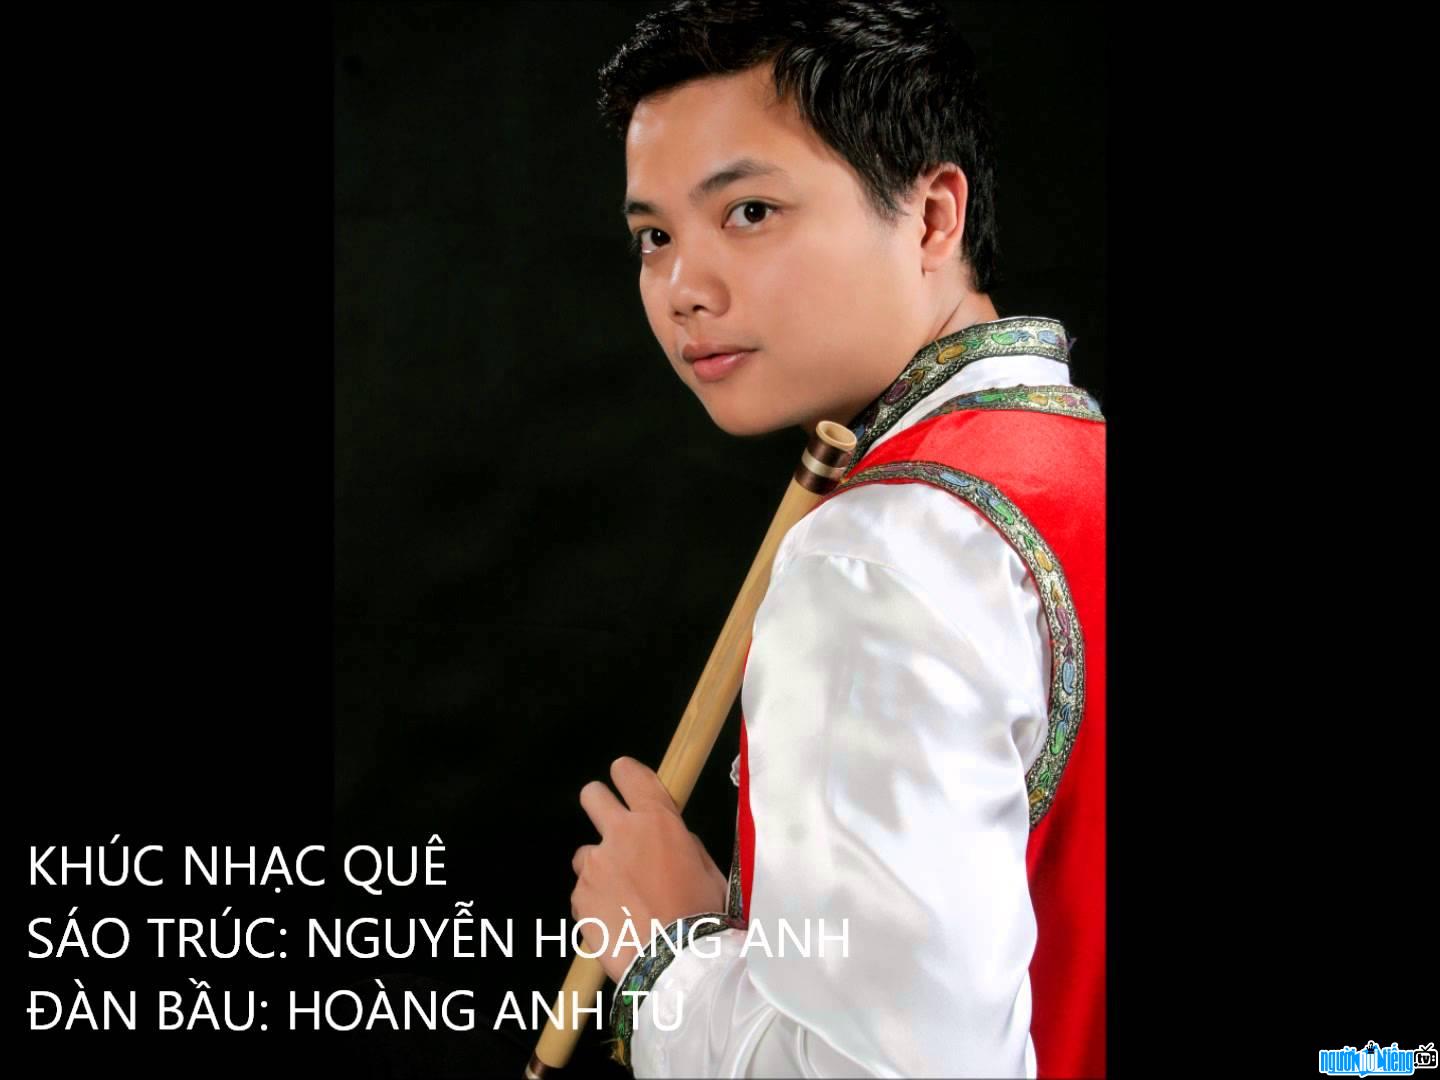 Nguyễn Hoàng Anh trong ca khúc "Khúc nhạc quê"